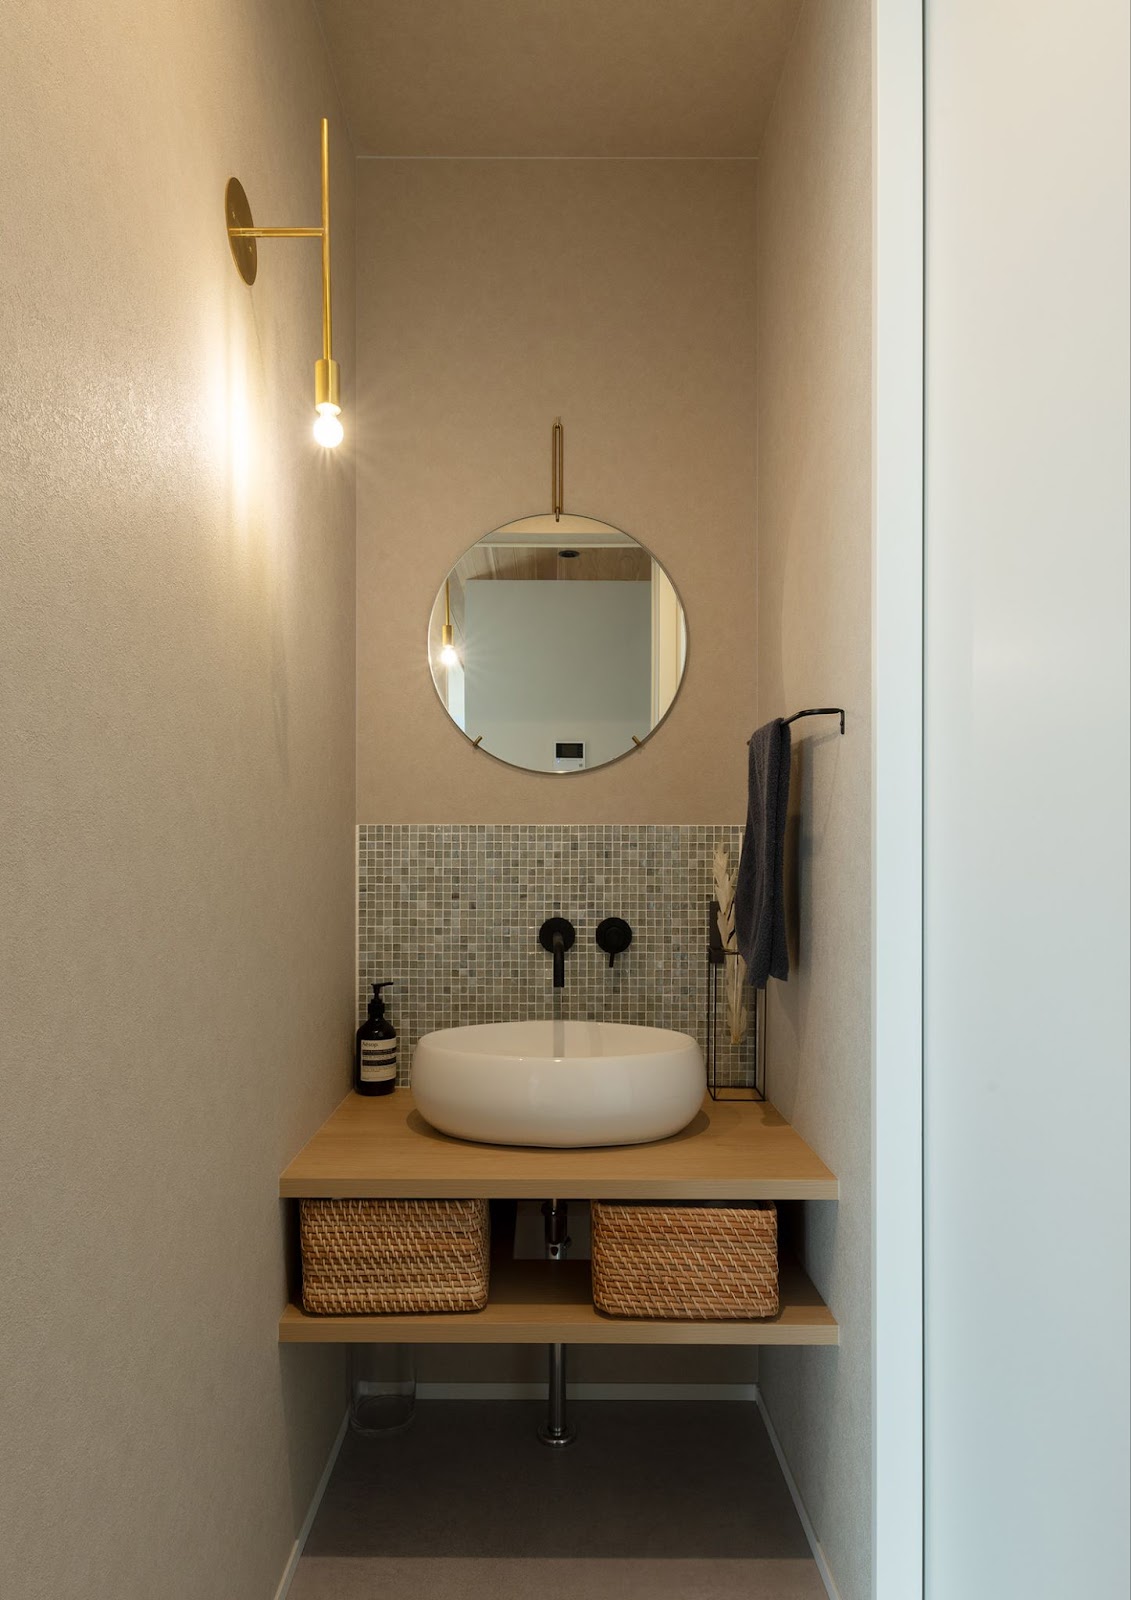 壁付け水栓や丸い鏡が個性的な手洗いカウンター